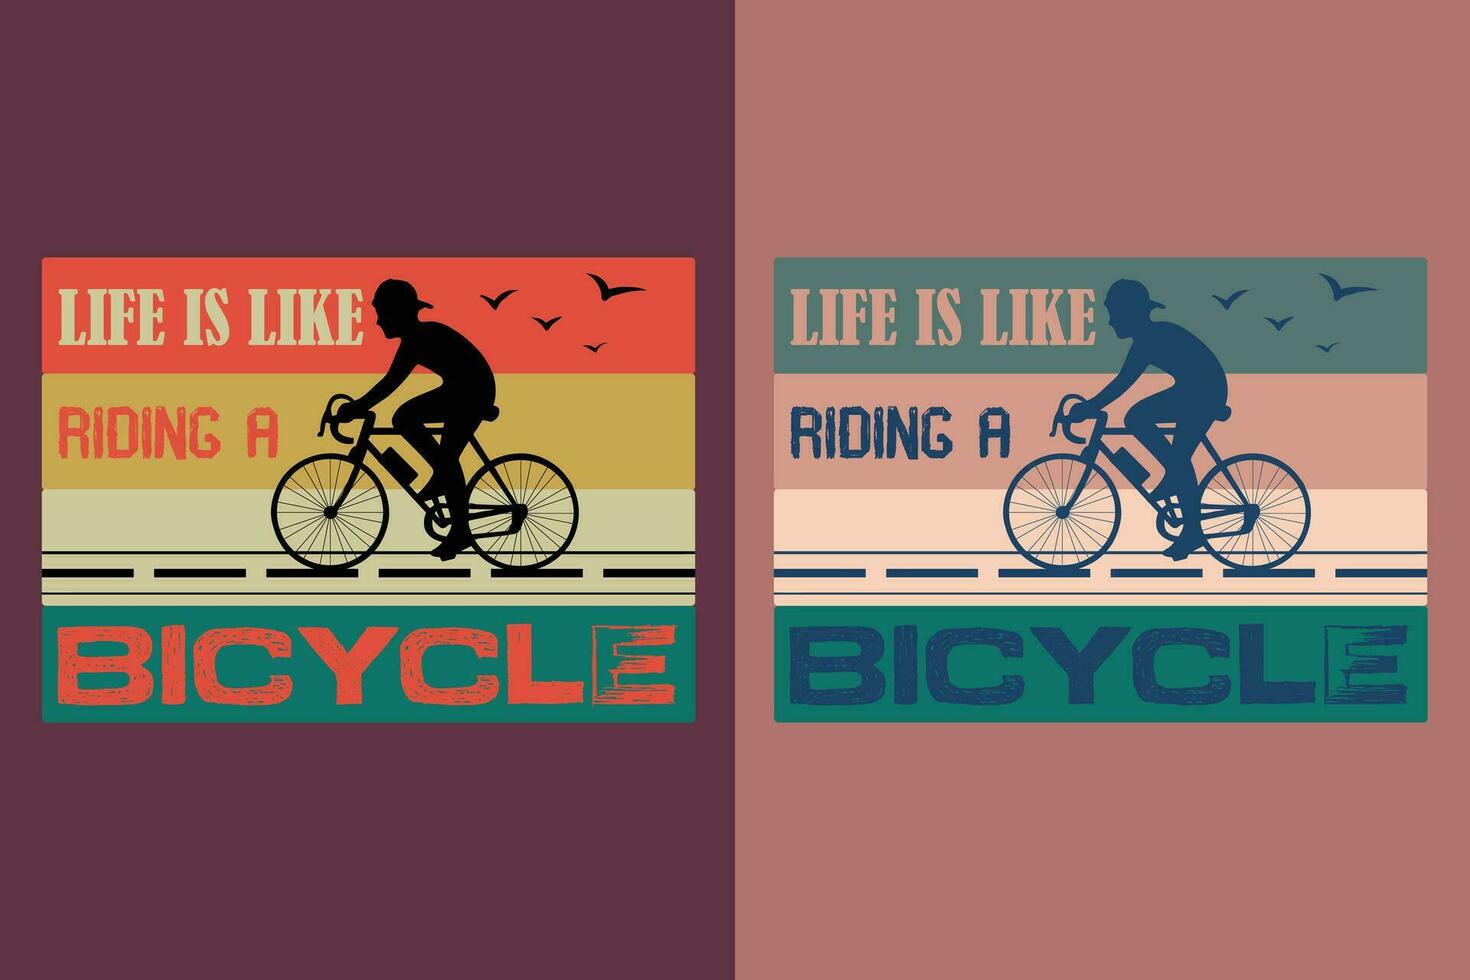 la vie est comme équitation une vélo, vélo chemise, cadeau pour bicyclette conduire, cycliste cadeau, vélo vêtements, bicyclette amoureux chemise, cyclisme chemise, Cyclisme cadeau, Cyclisme chemise vecteur